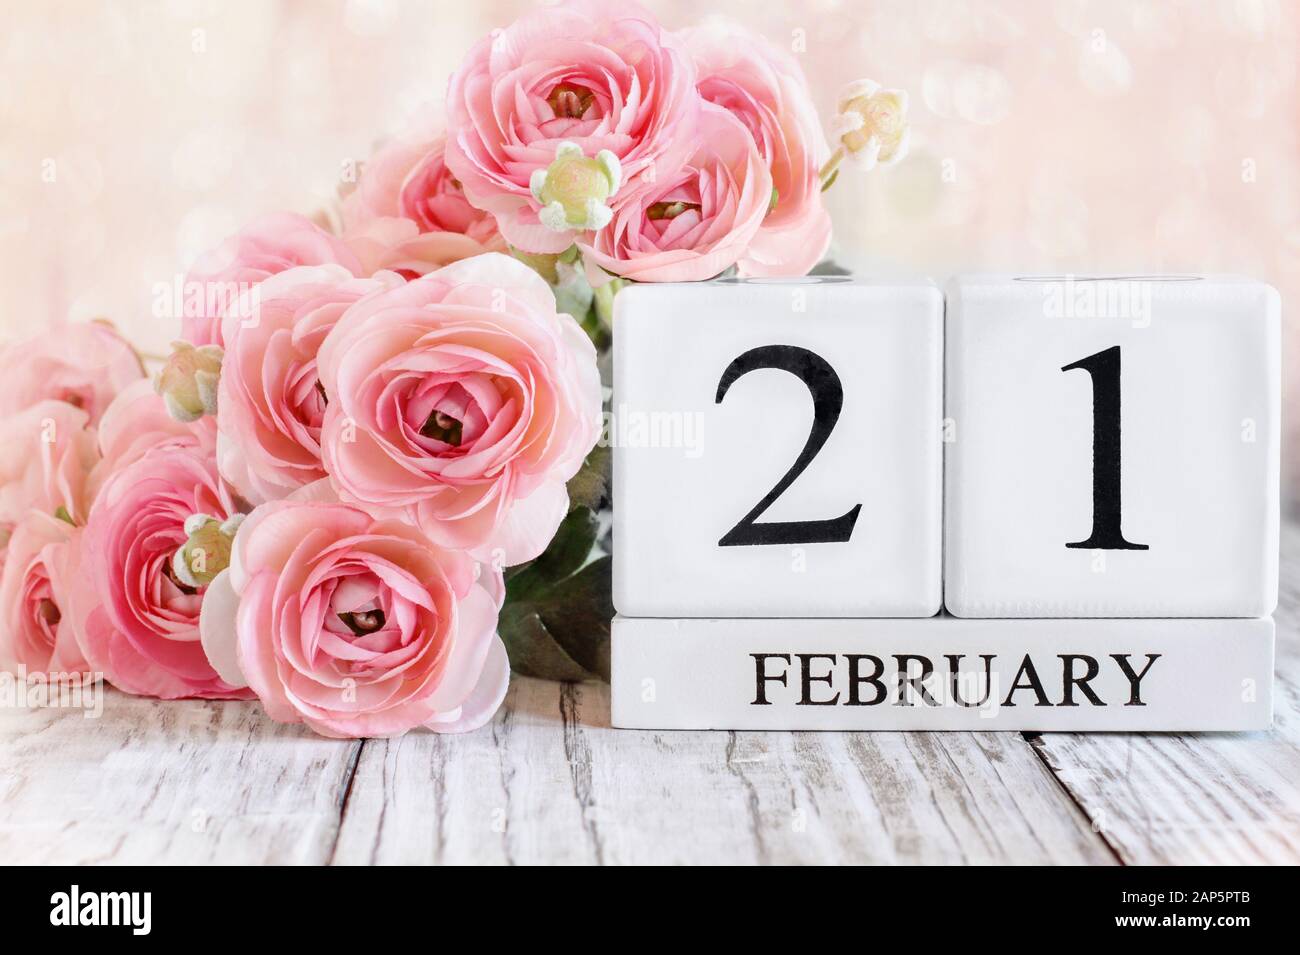 Blocs calendrier en bois blanc avec la date du 21 février et fleurs roses de ranunculus sur une table en bois. Mise au point sélective avec arrière-plan flou. Banque D'Images